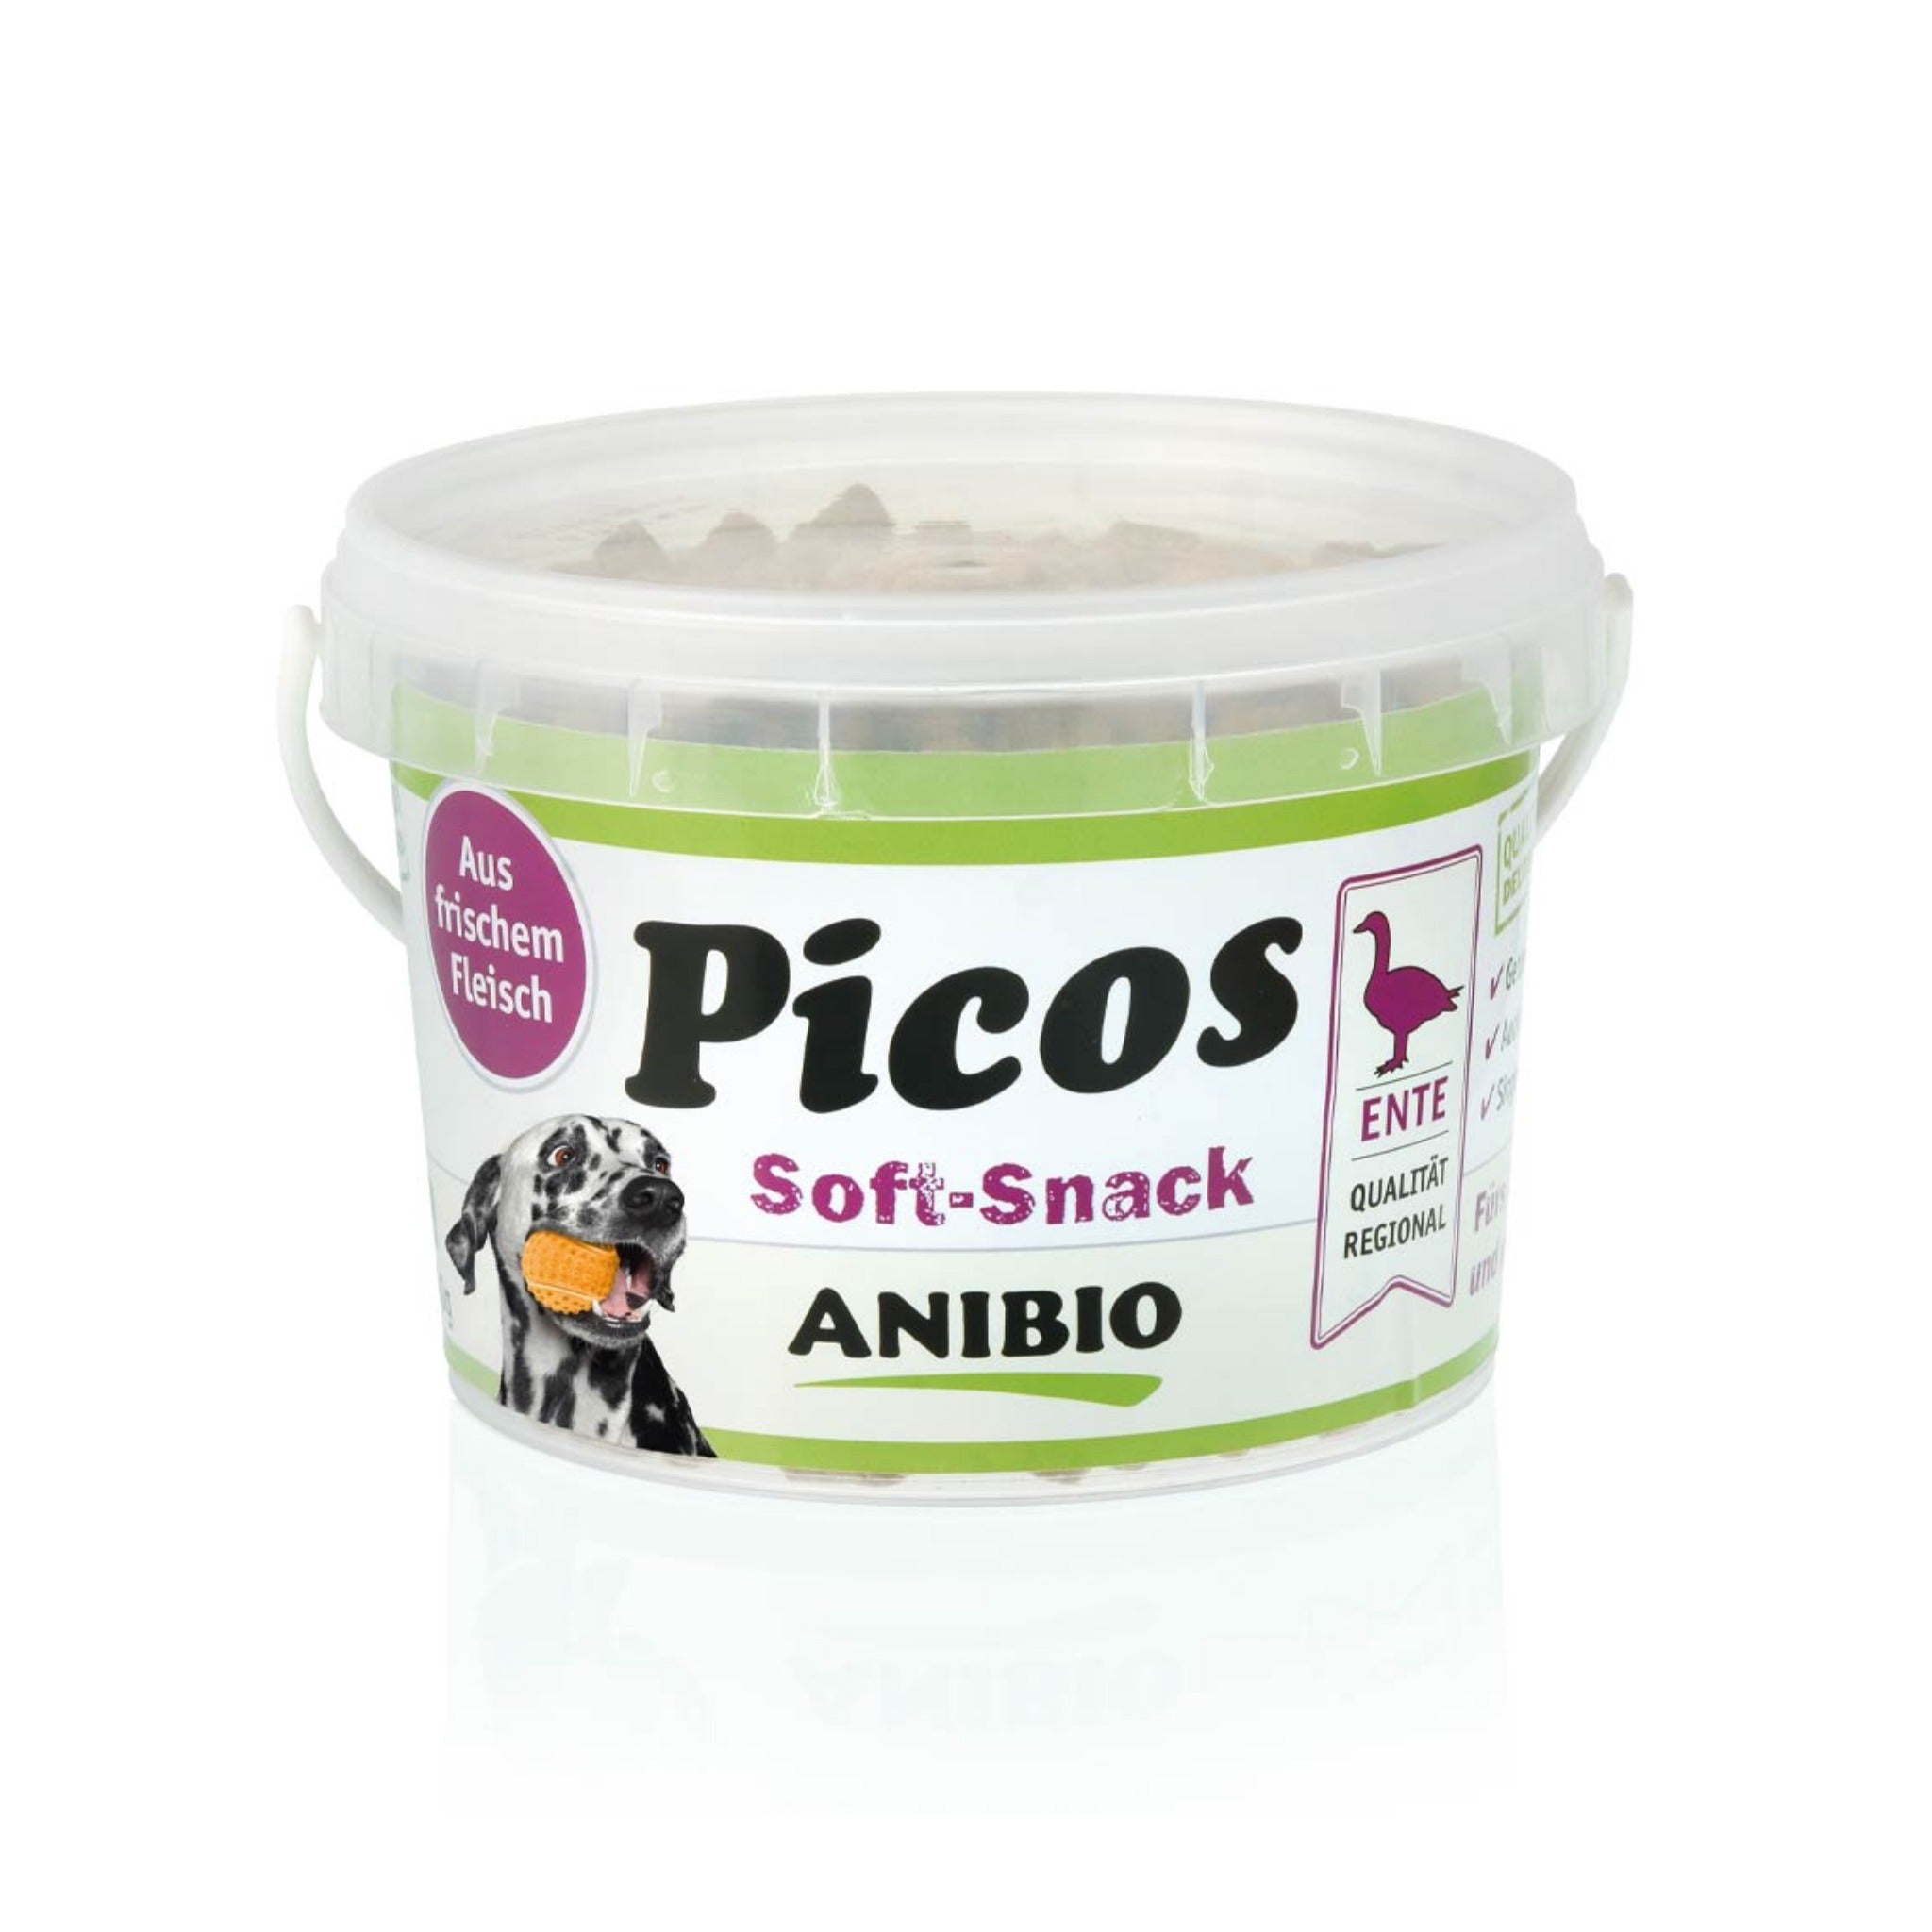 ANIBIO Picos Ente, Soft-Snack für Hunde - Woofshack